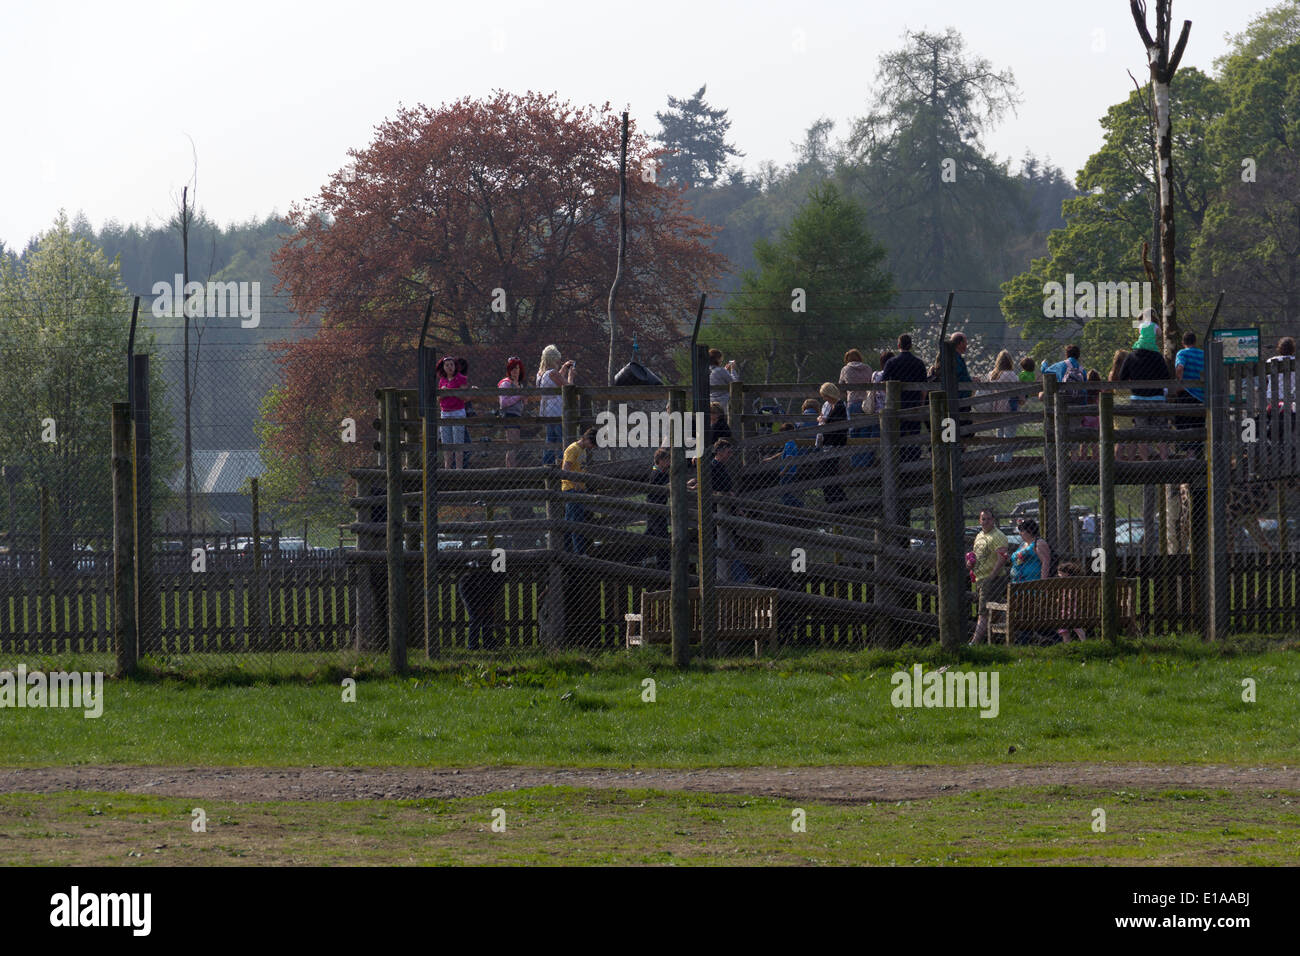 Persone che salgono una struttura in legno all'interno di Blair Drummond Safari Park, questo porta ad un punto di vista per un contenitore di animale (giraffe) Foto Stock